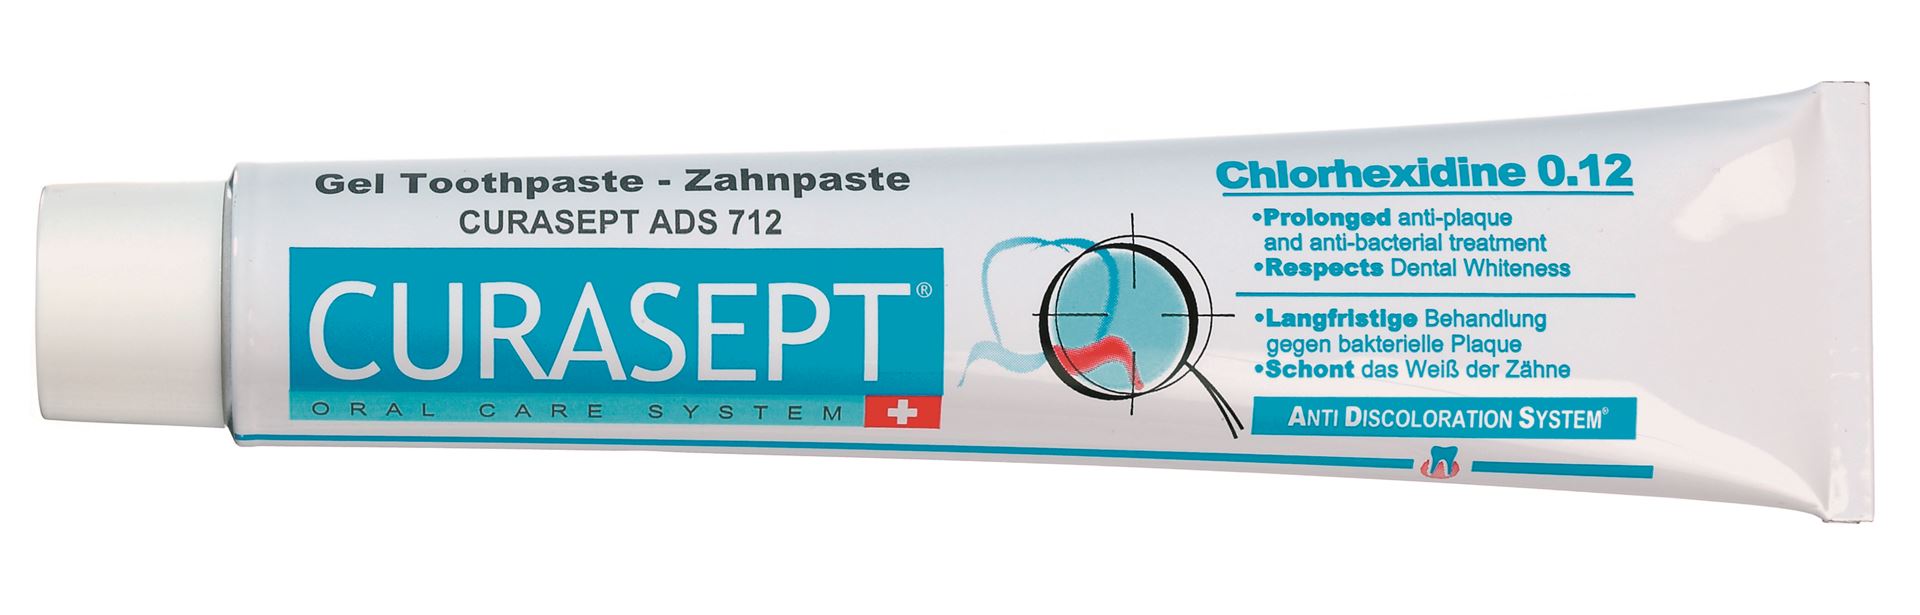 Curasept 0.12% Chlorhexidine Toothpaste (Ads712)